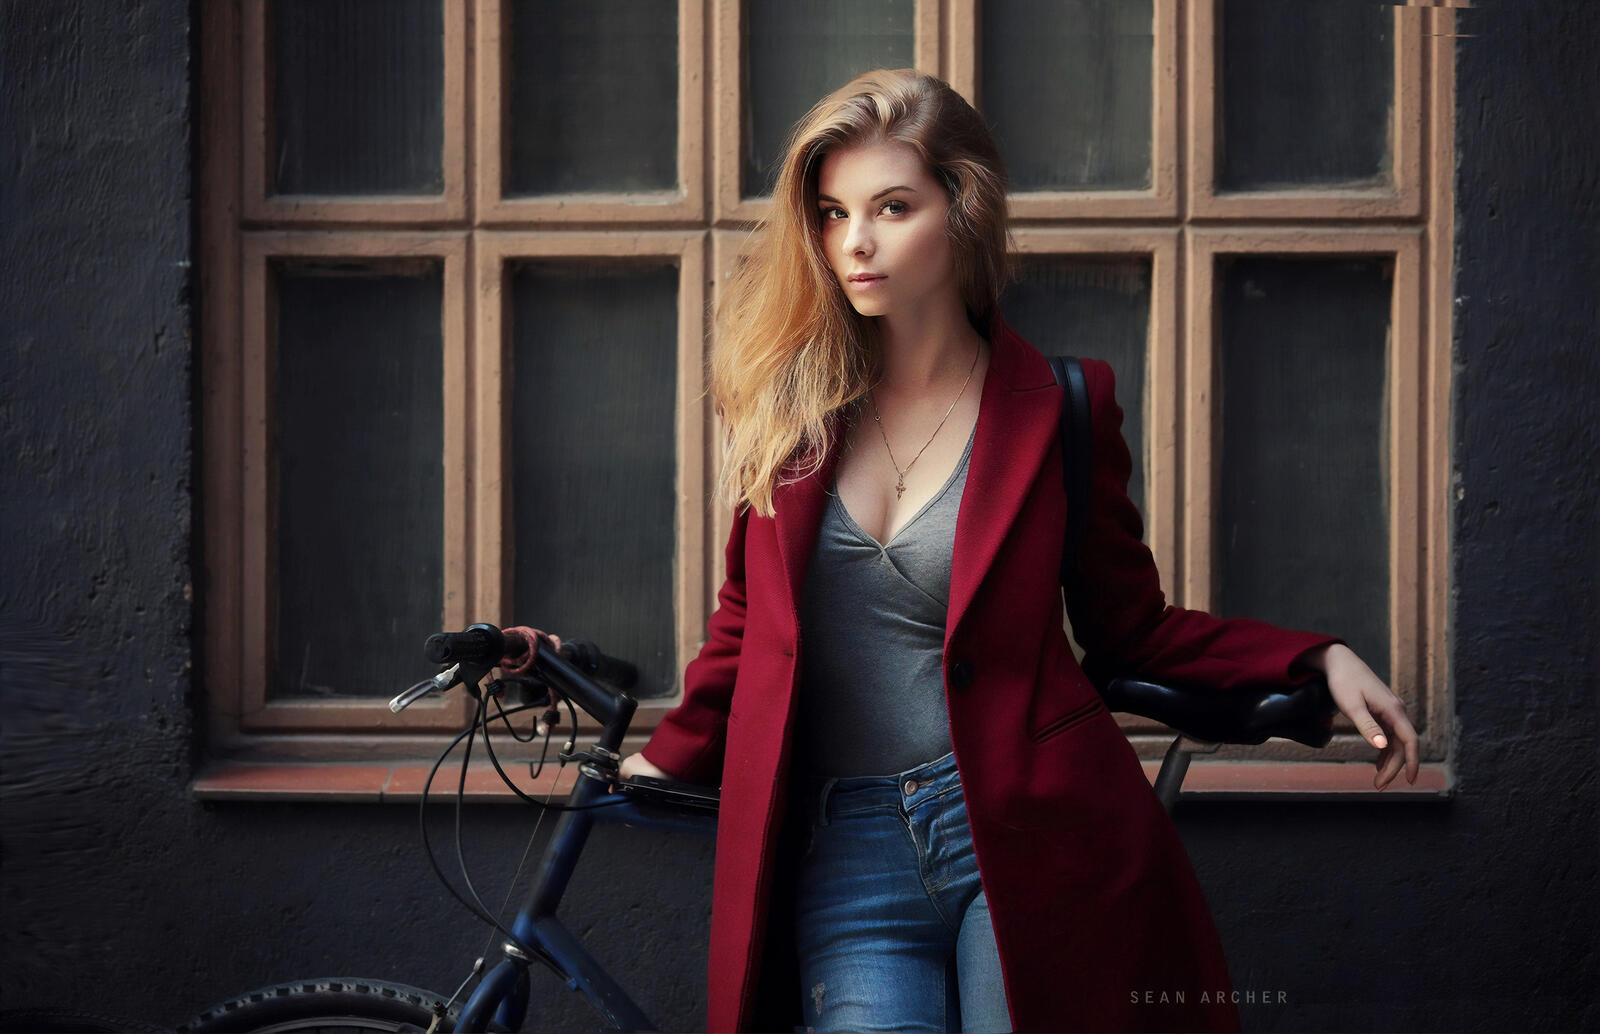 Бесплатное фото Девушка у окна с велосипедом